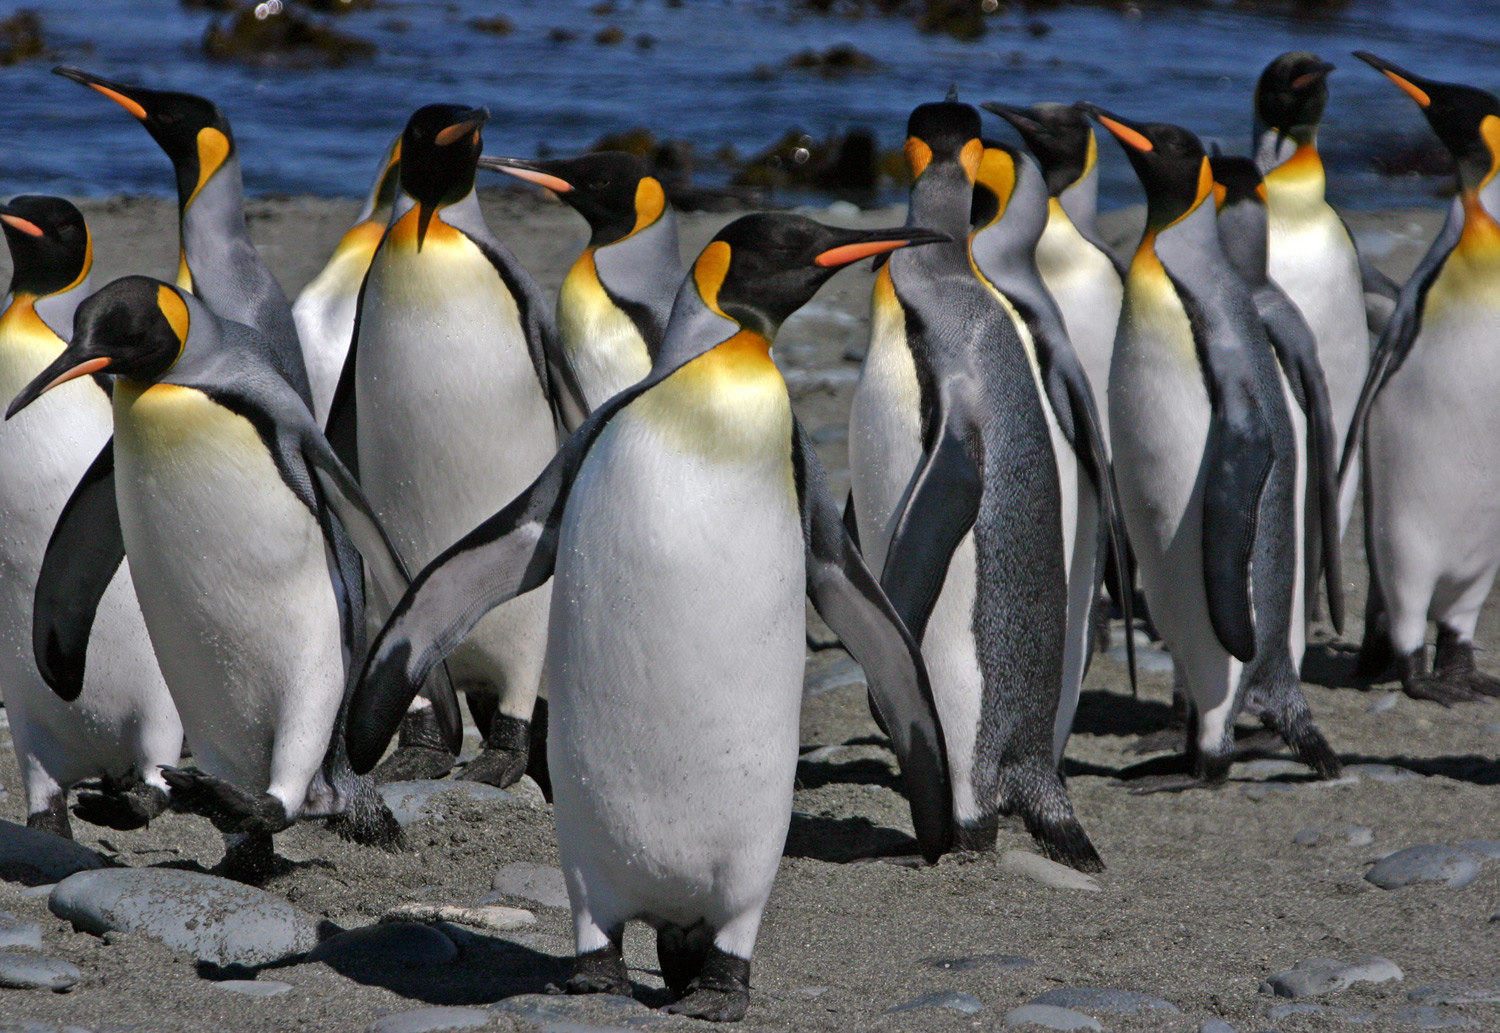 Where do King penguins live?